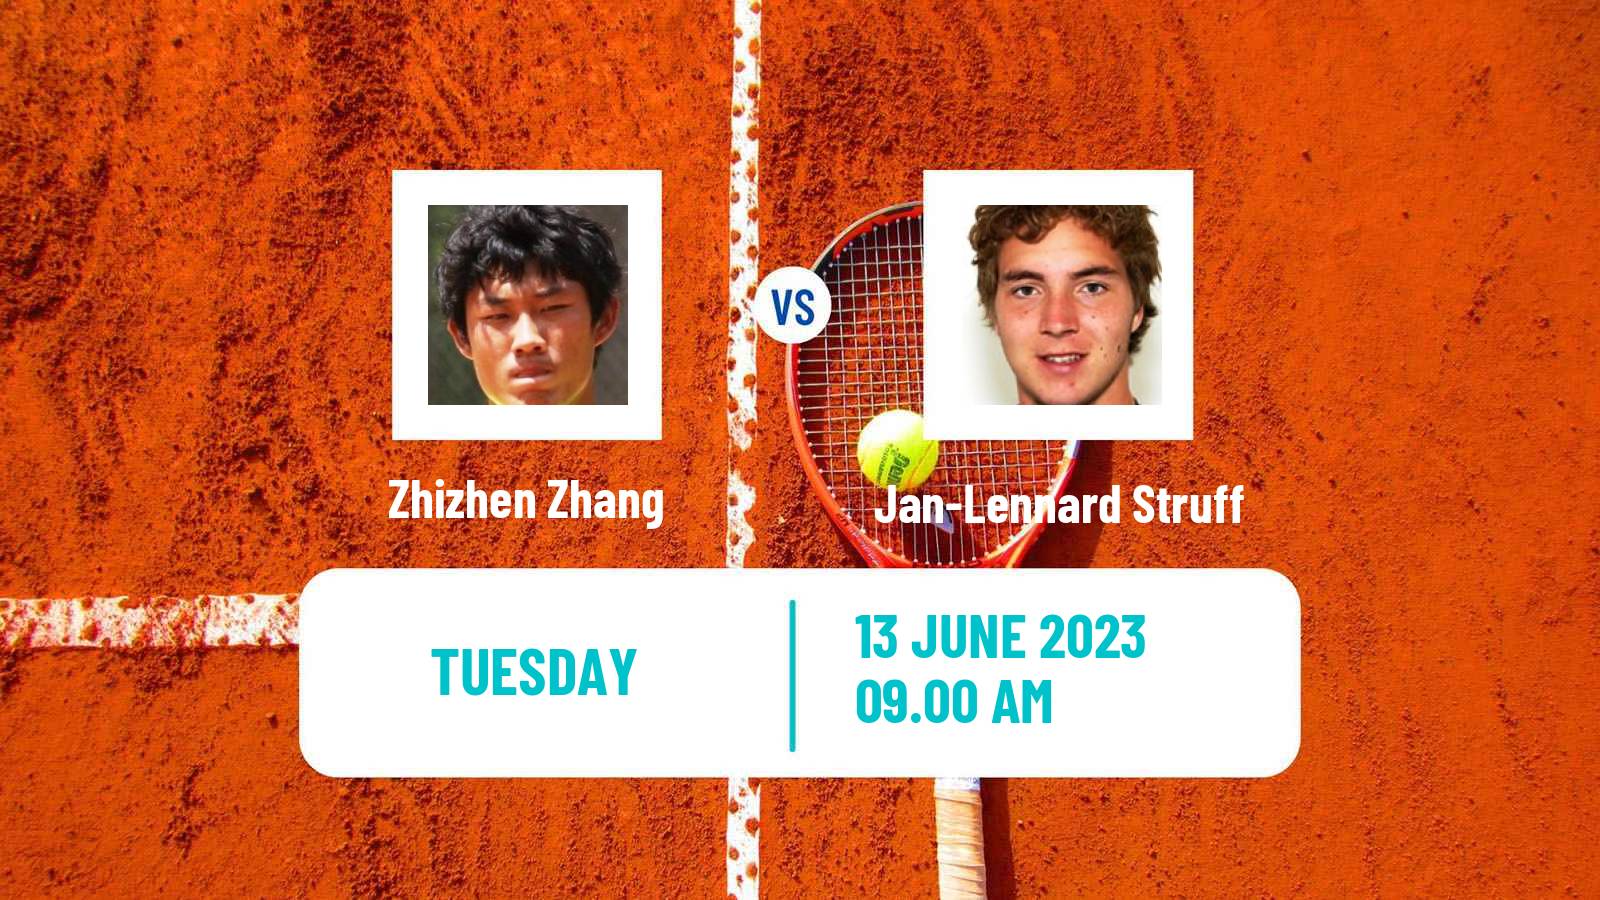 Tennis ATP Stuttgart Zhizhen Zhang - Jan-Lennard Struff